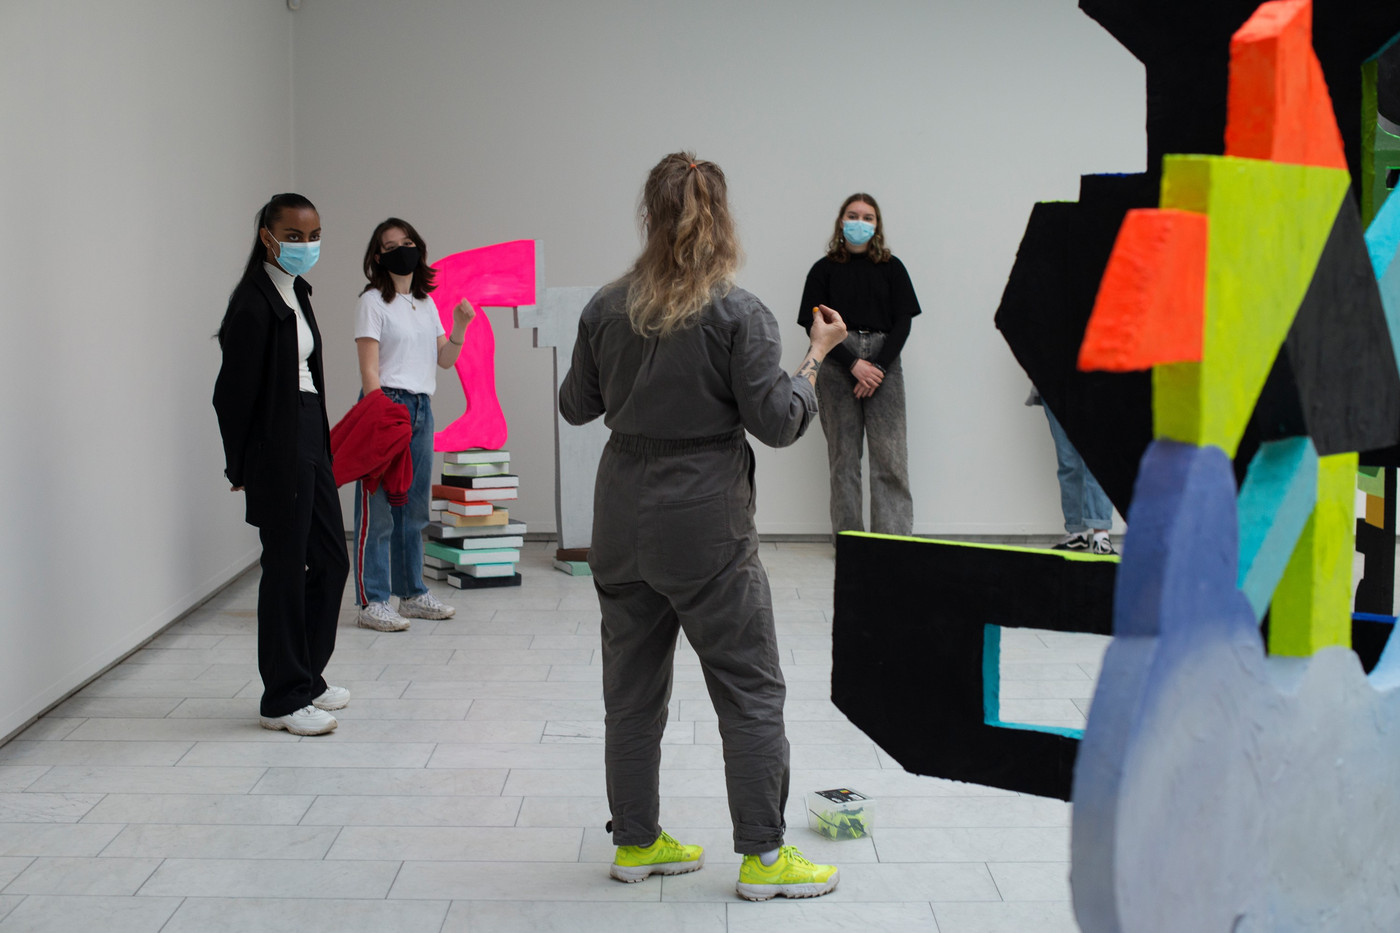 Gruppa besøker kunstner Elise Storsveen i utstillingen på Kunstnerforbundet.